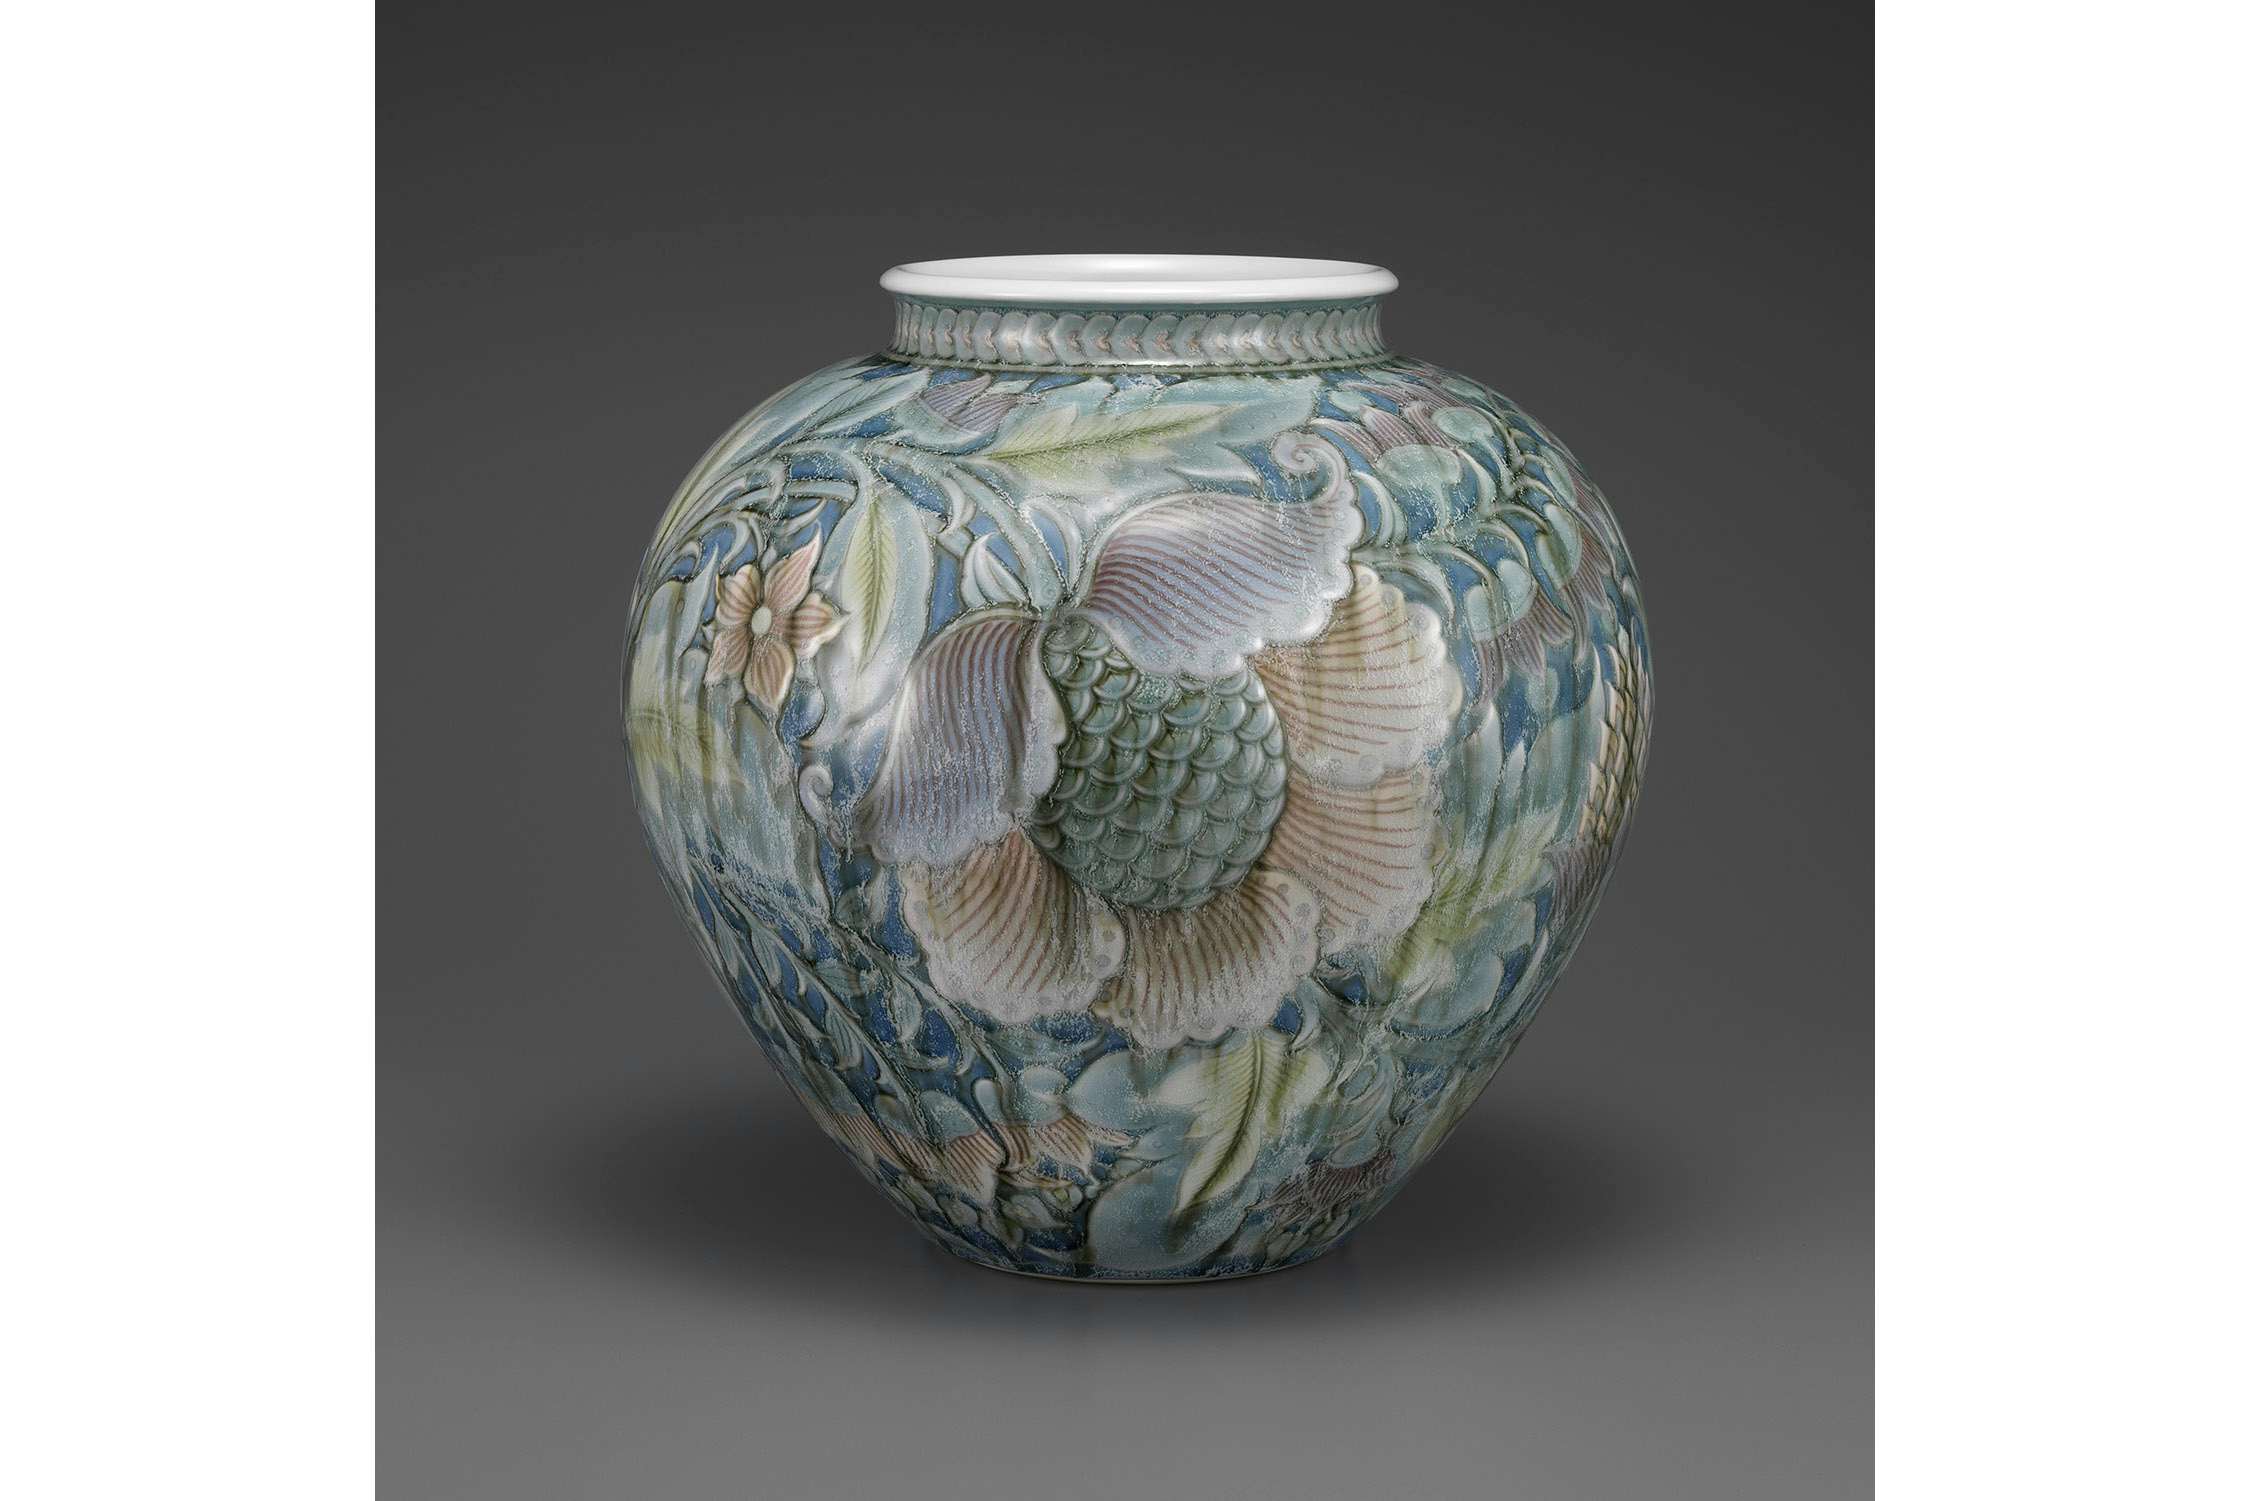 近・現代の工芸を通して「自然を愛でる」日本人の心を紹介。陶芸家 